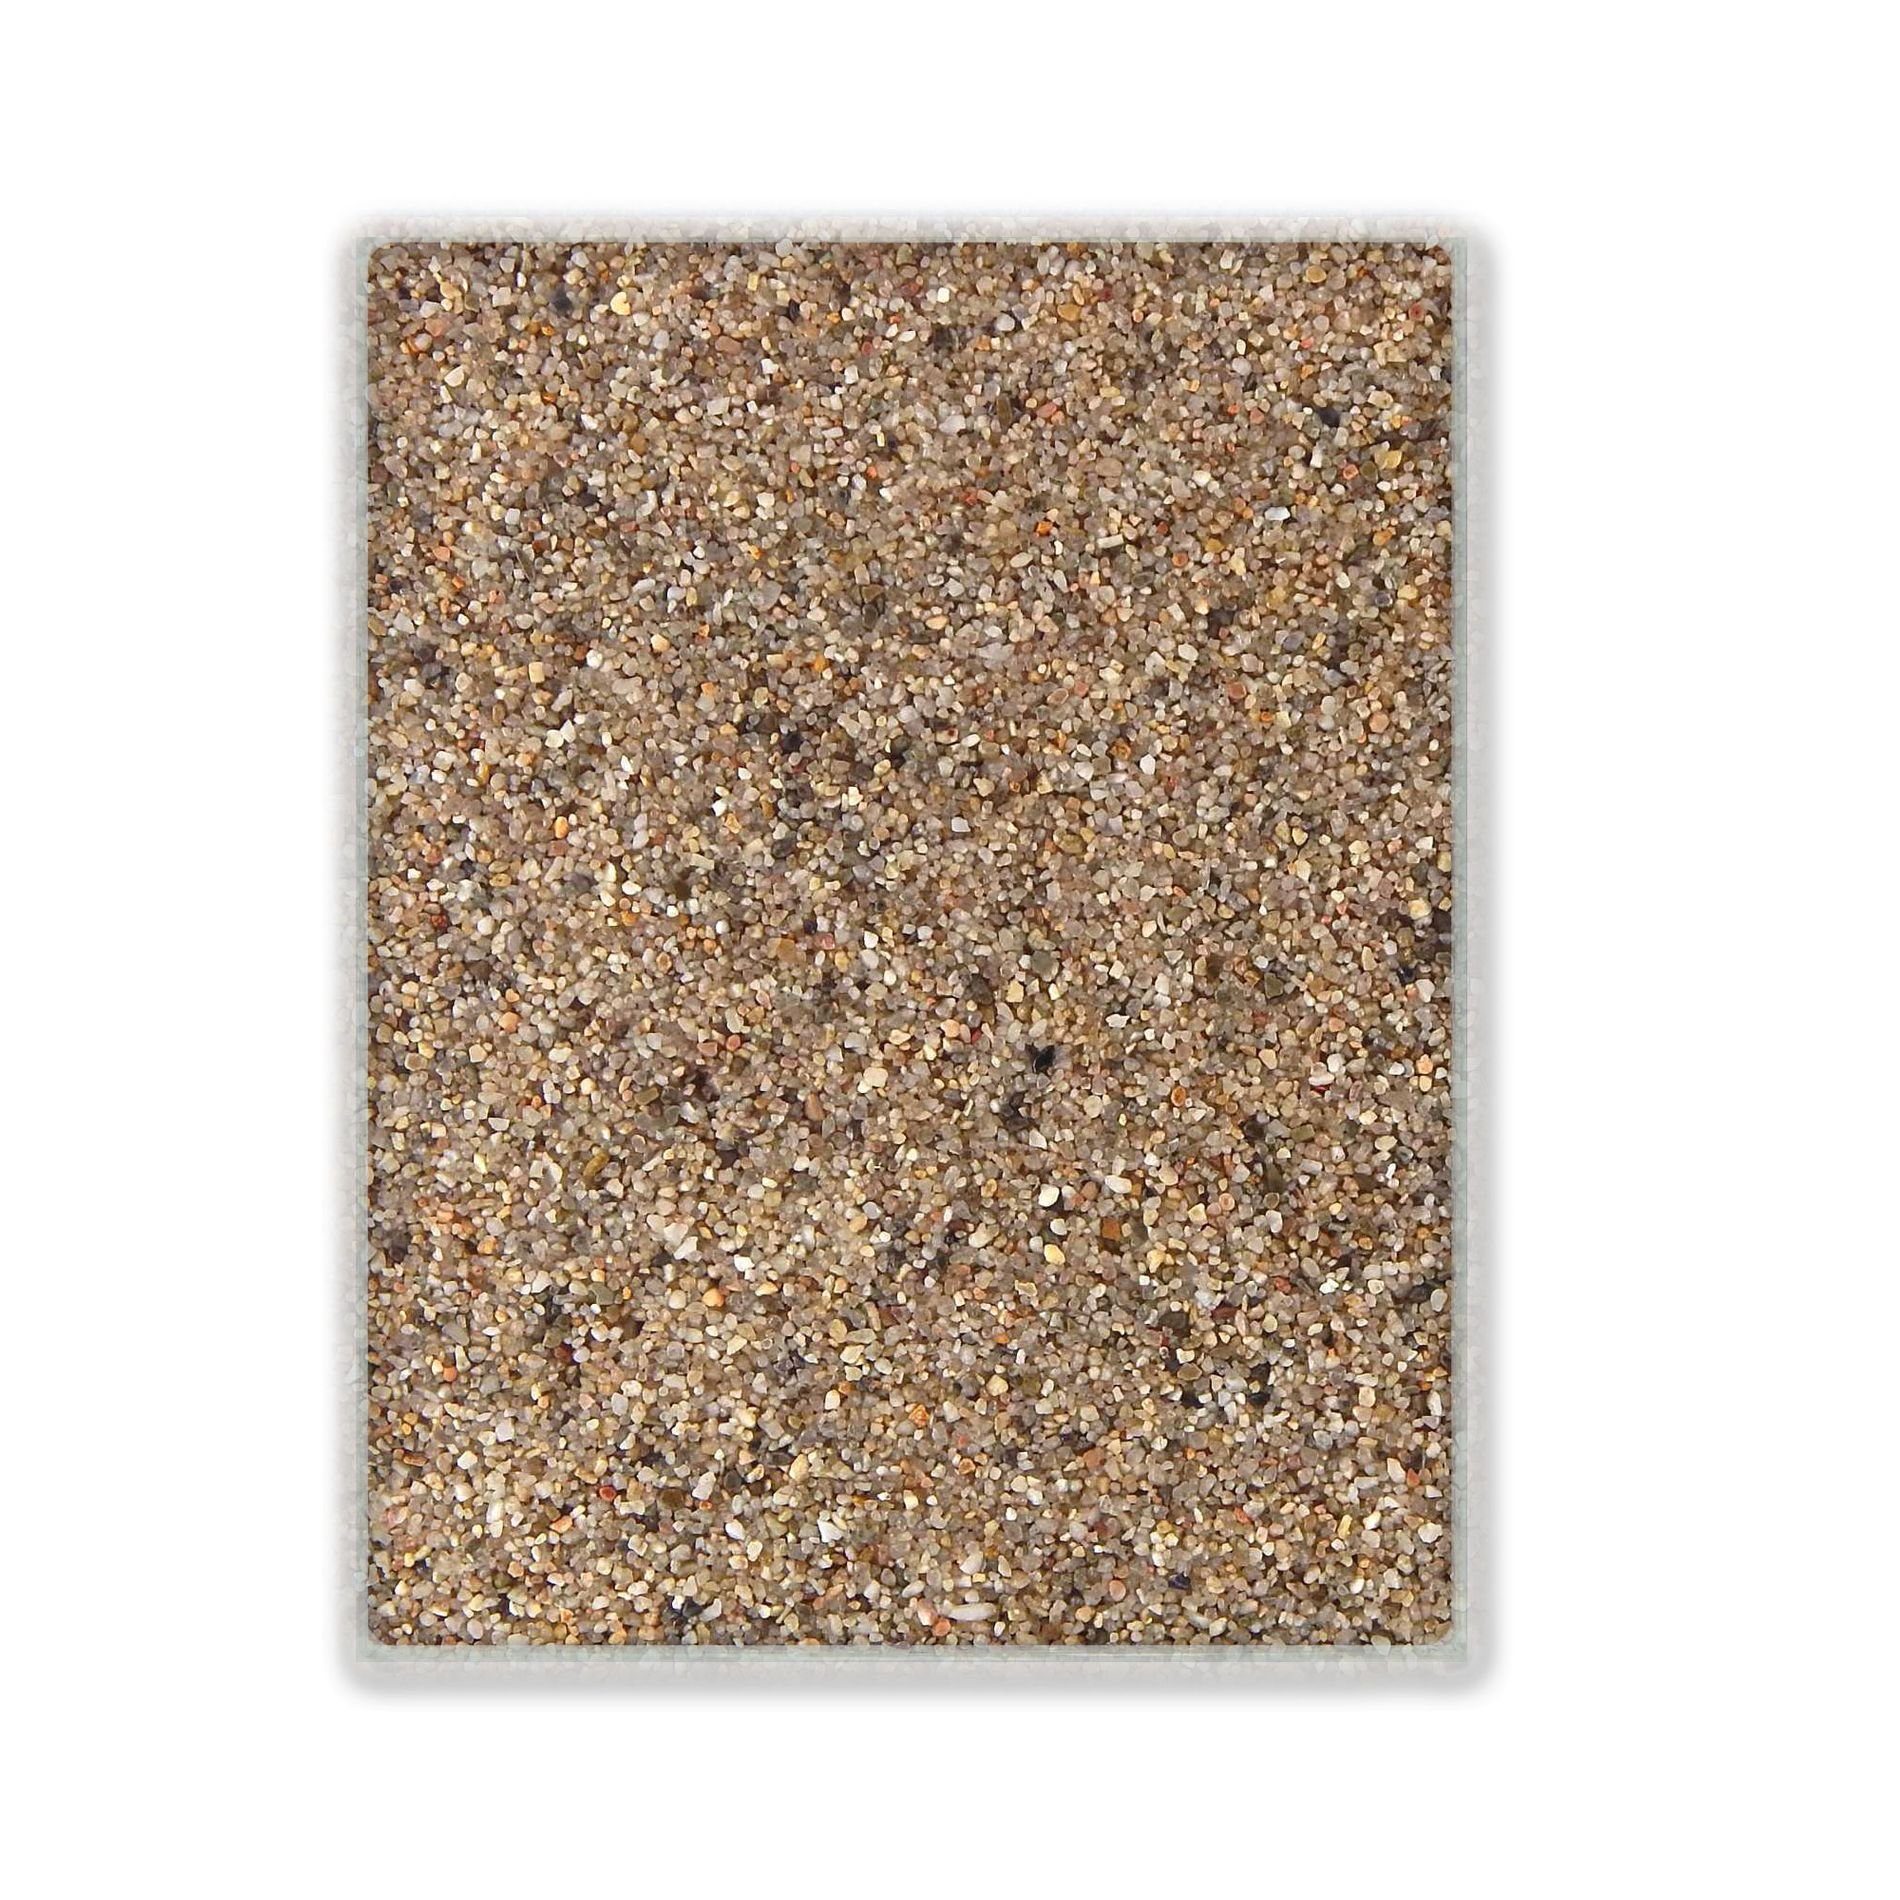 Terralith® Designboden Farbmuster Kompaktboden -natura-, Originalware aus der Charge, die wir in diesem Moment im Abverkauf haben.